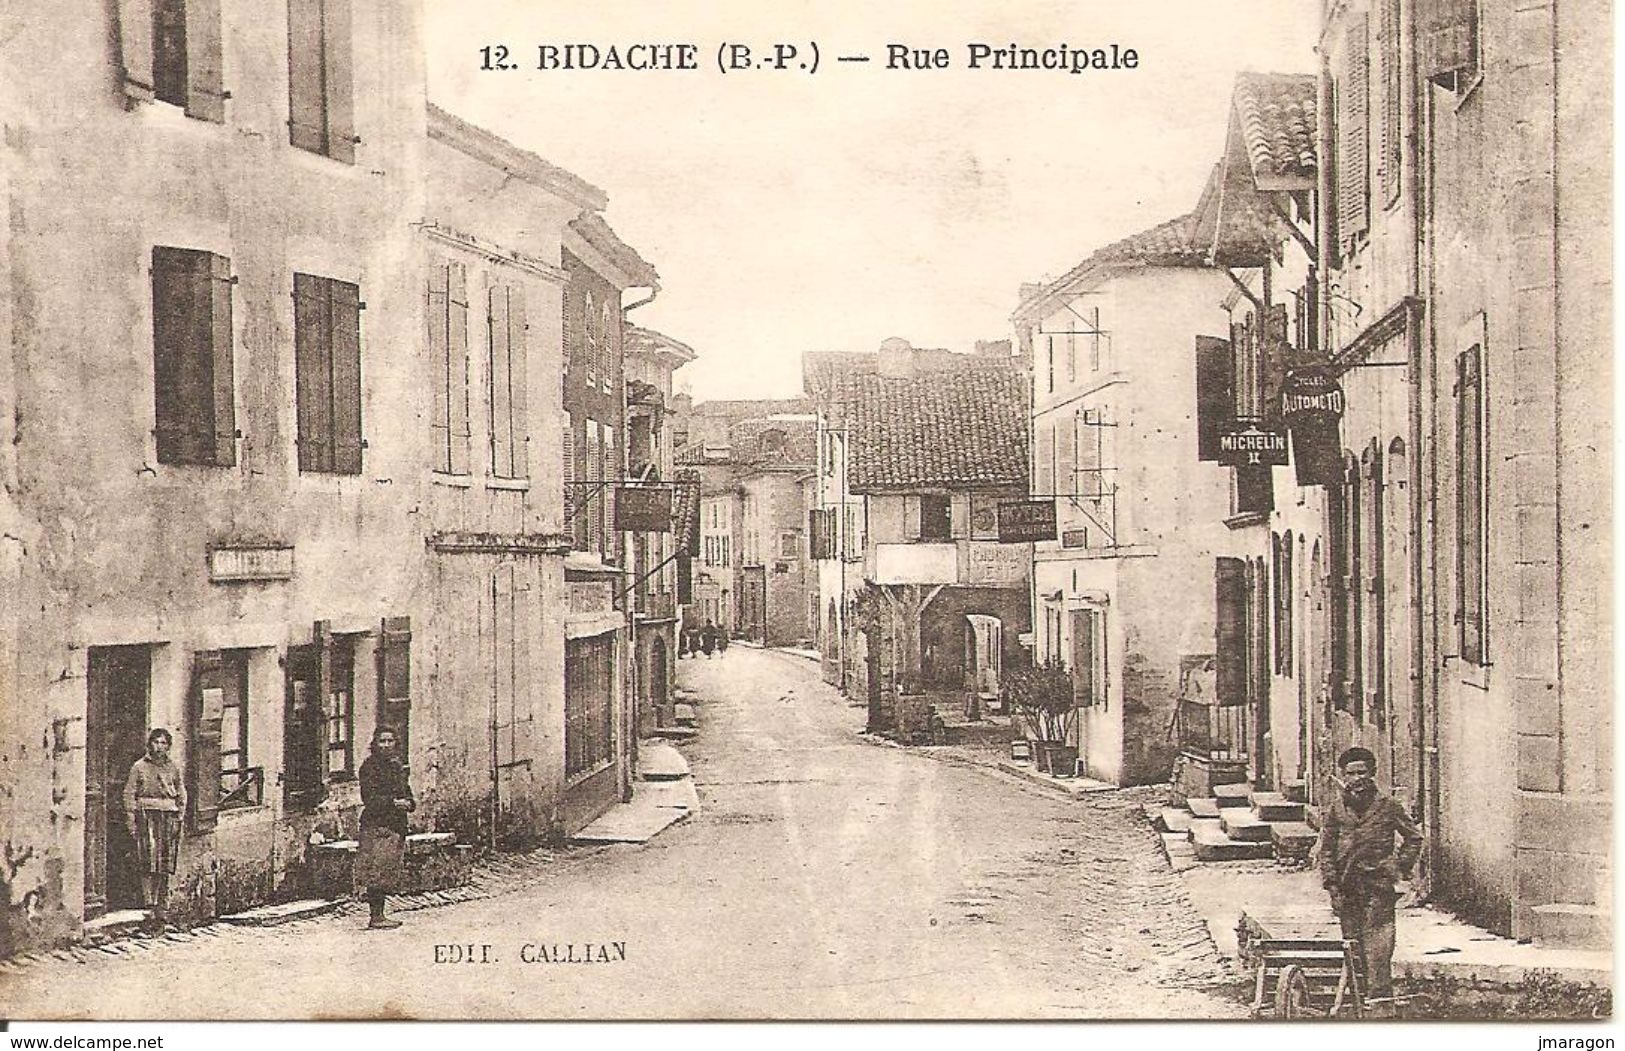 BIDACHE - Rue Principale - Callian 12 - Vierge, à écrire - Tbe - Bidache